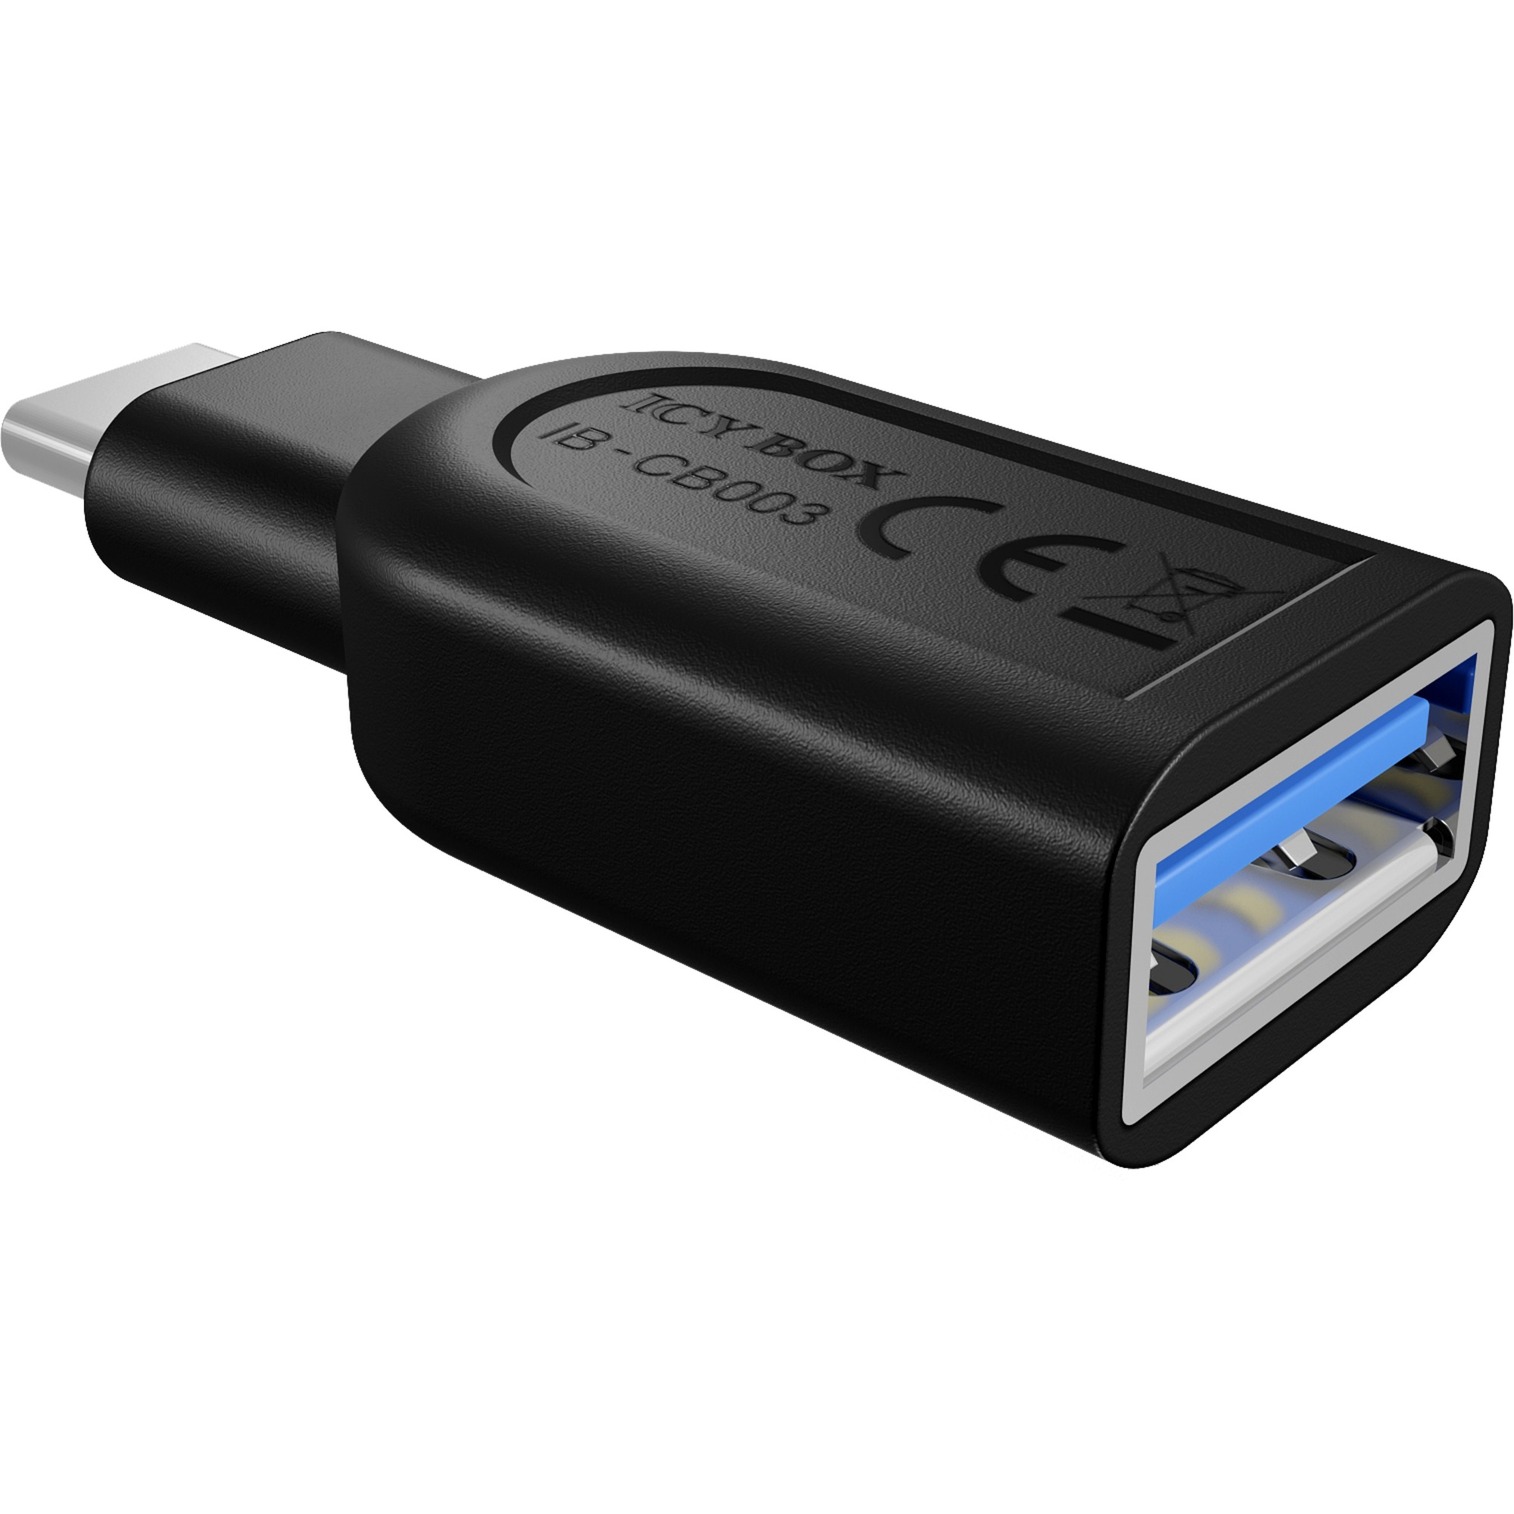 Image of Alternate - IB-CB003 USB 3.0-Adapter Stecker C > Buchse A online einkaufen bei Alternate